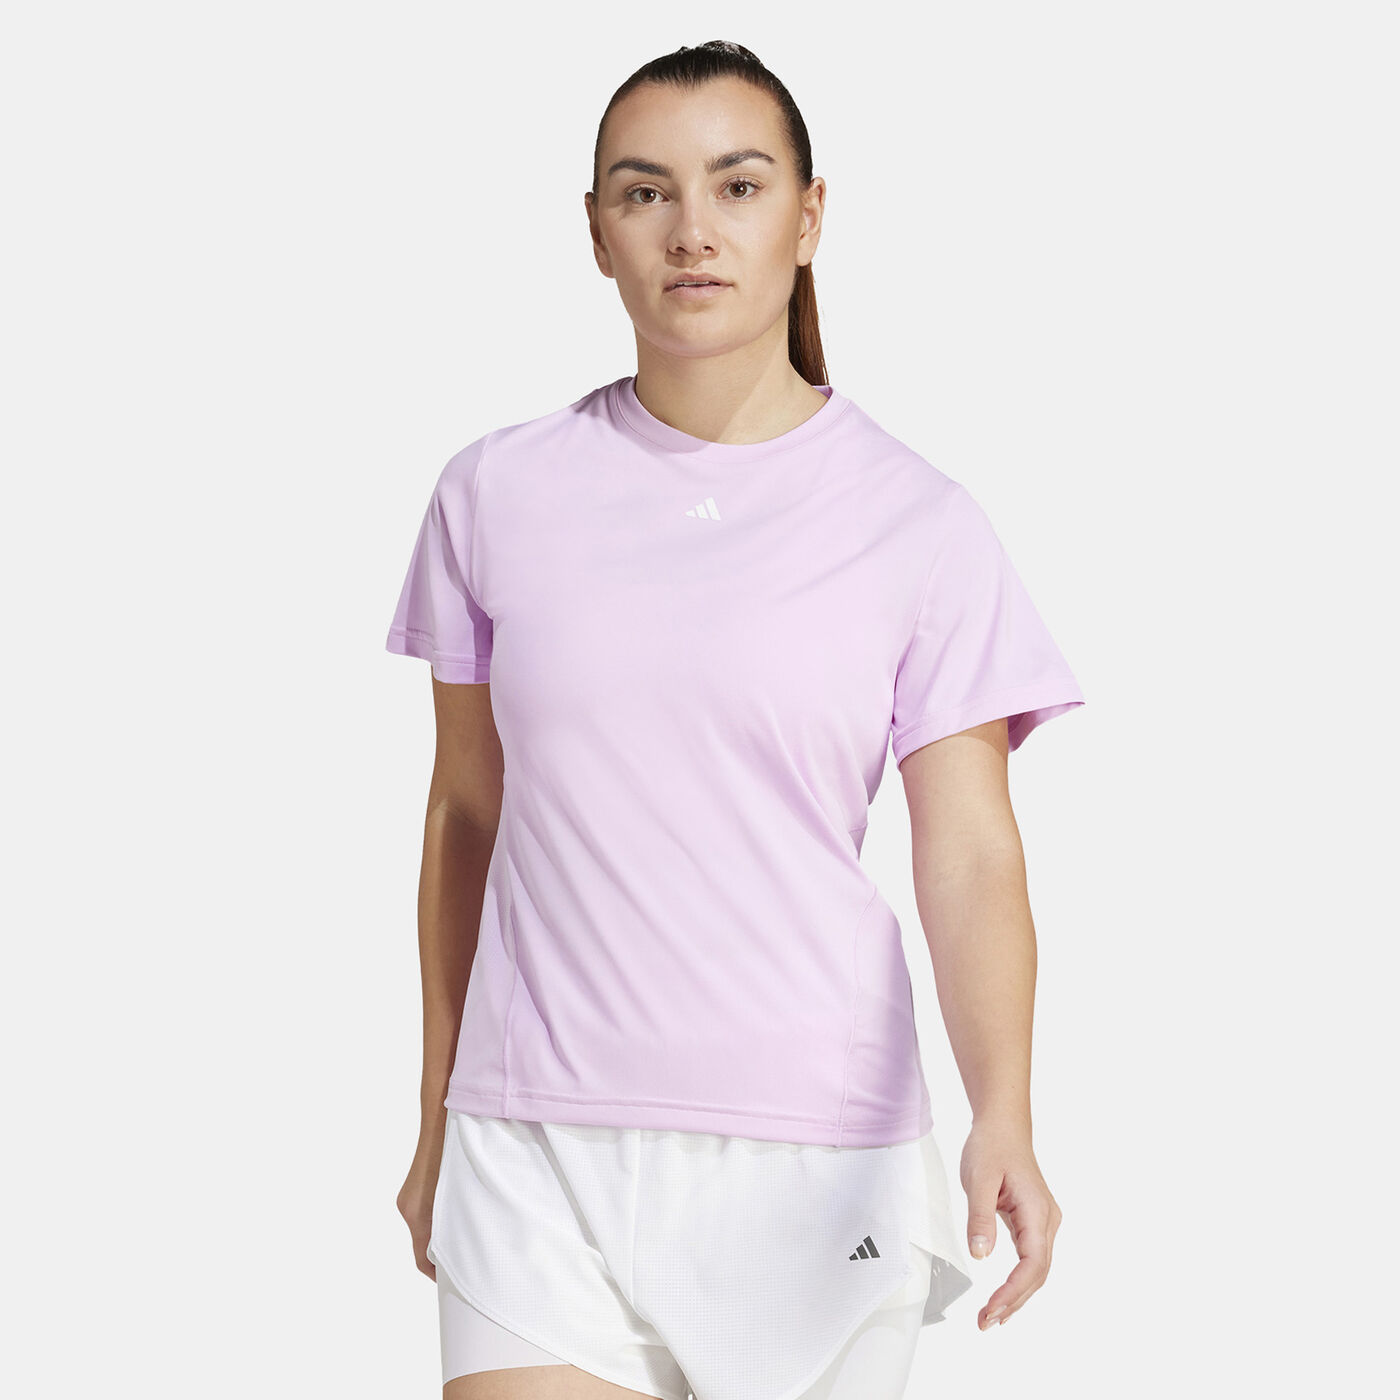 Women's Designed for Training T-Shirt